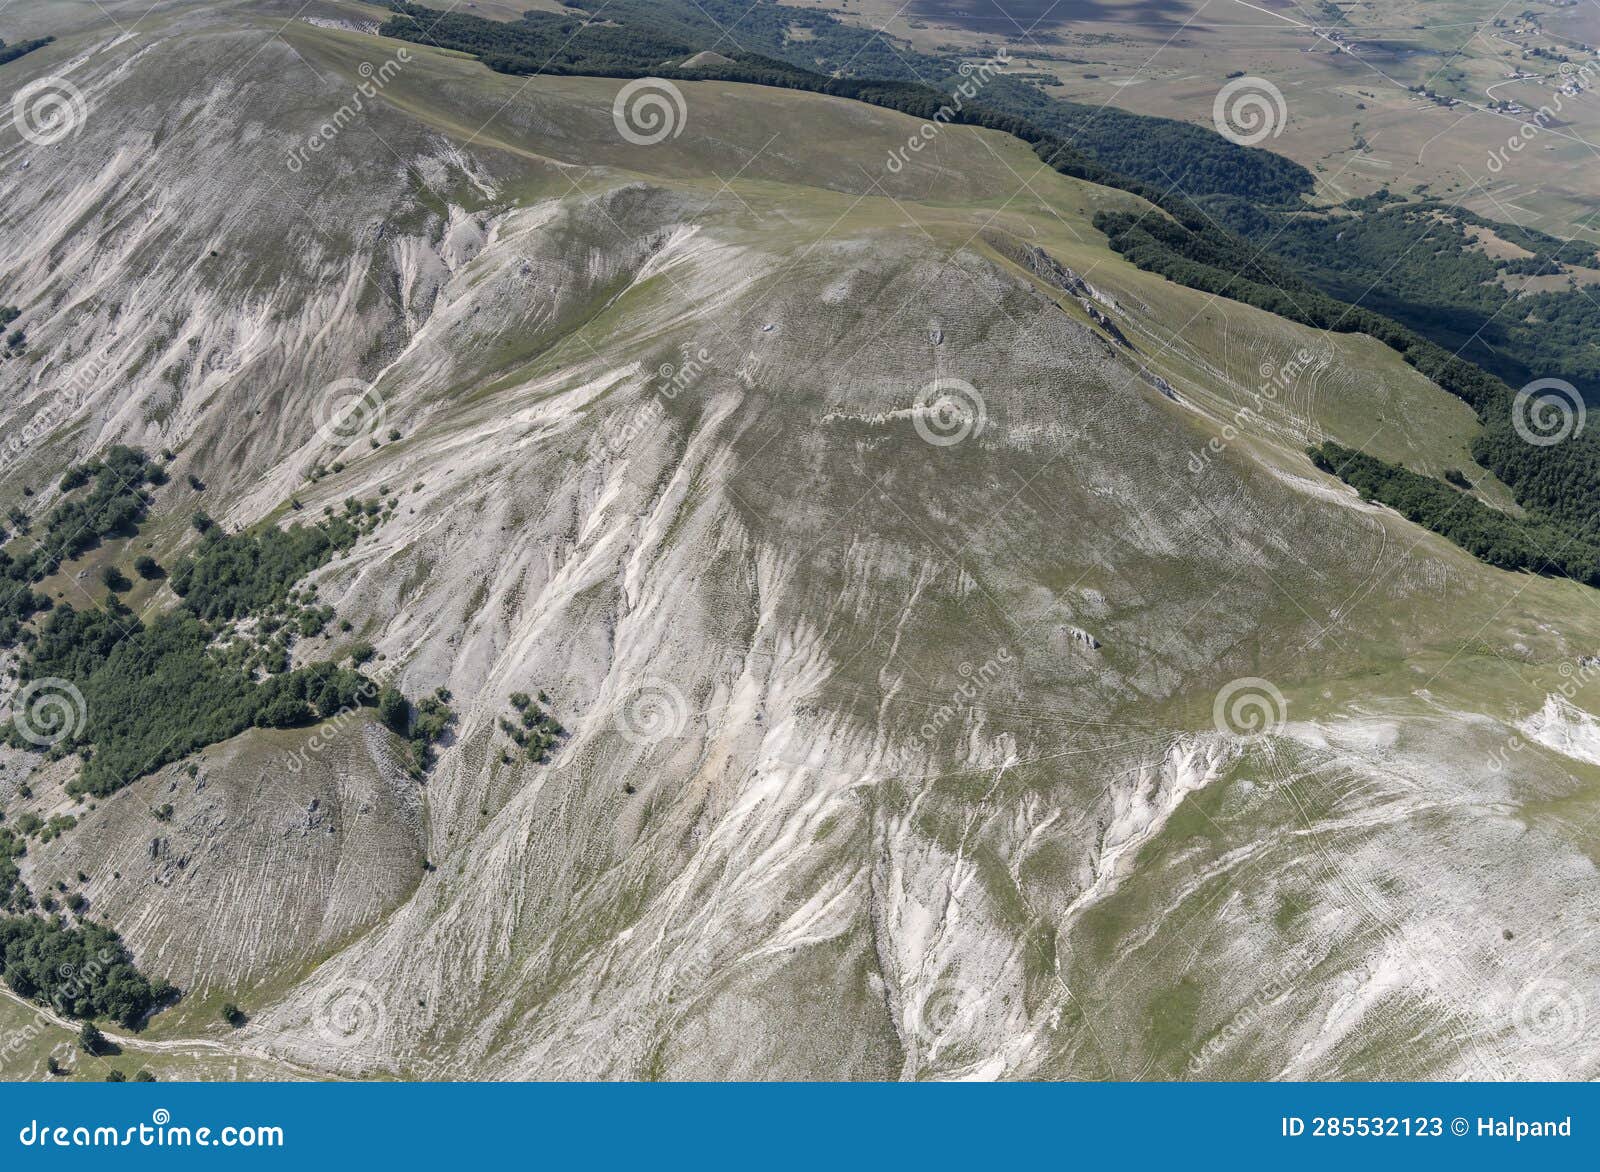 ravines and barren slopes of calvo peak, near rocca di corno, rieti